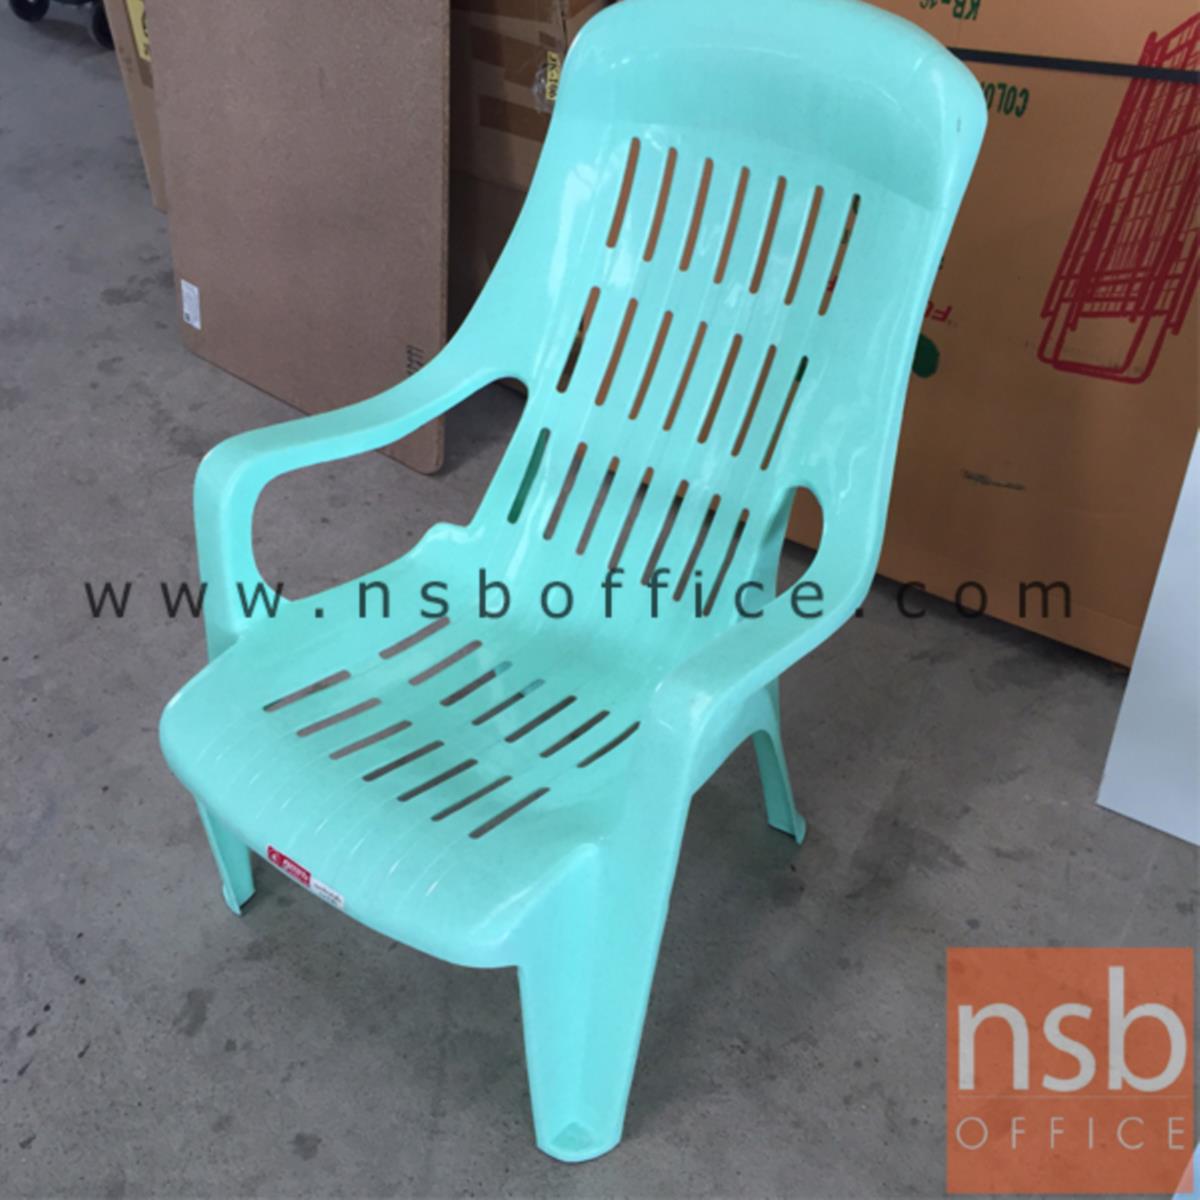 เก้าอี้พลาสติกเอนนอน รุ่น COMFORTTABEL_CHAIR (พลาสติกเกรด A) 